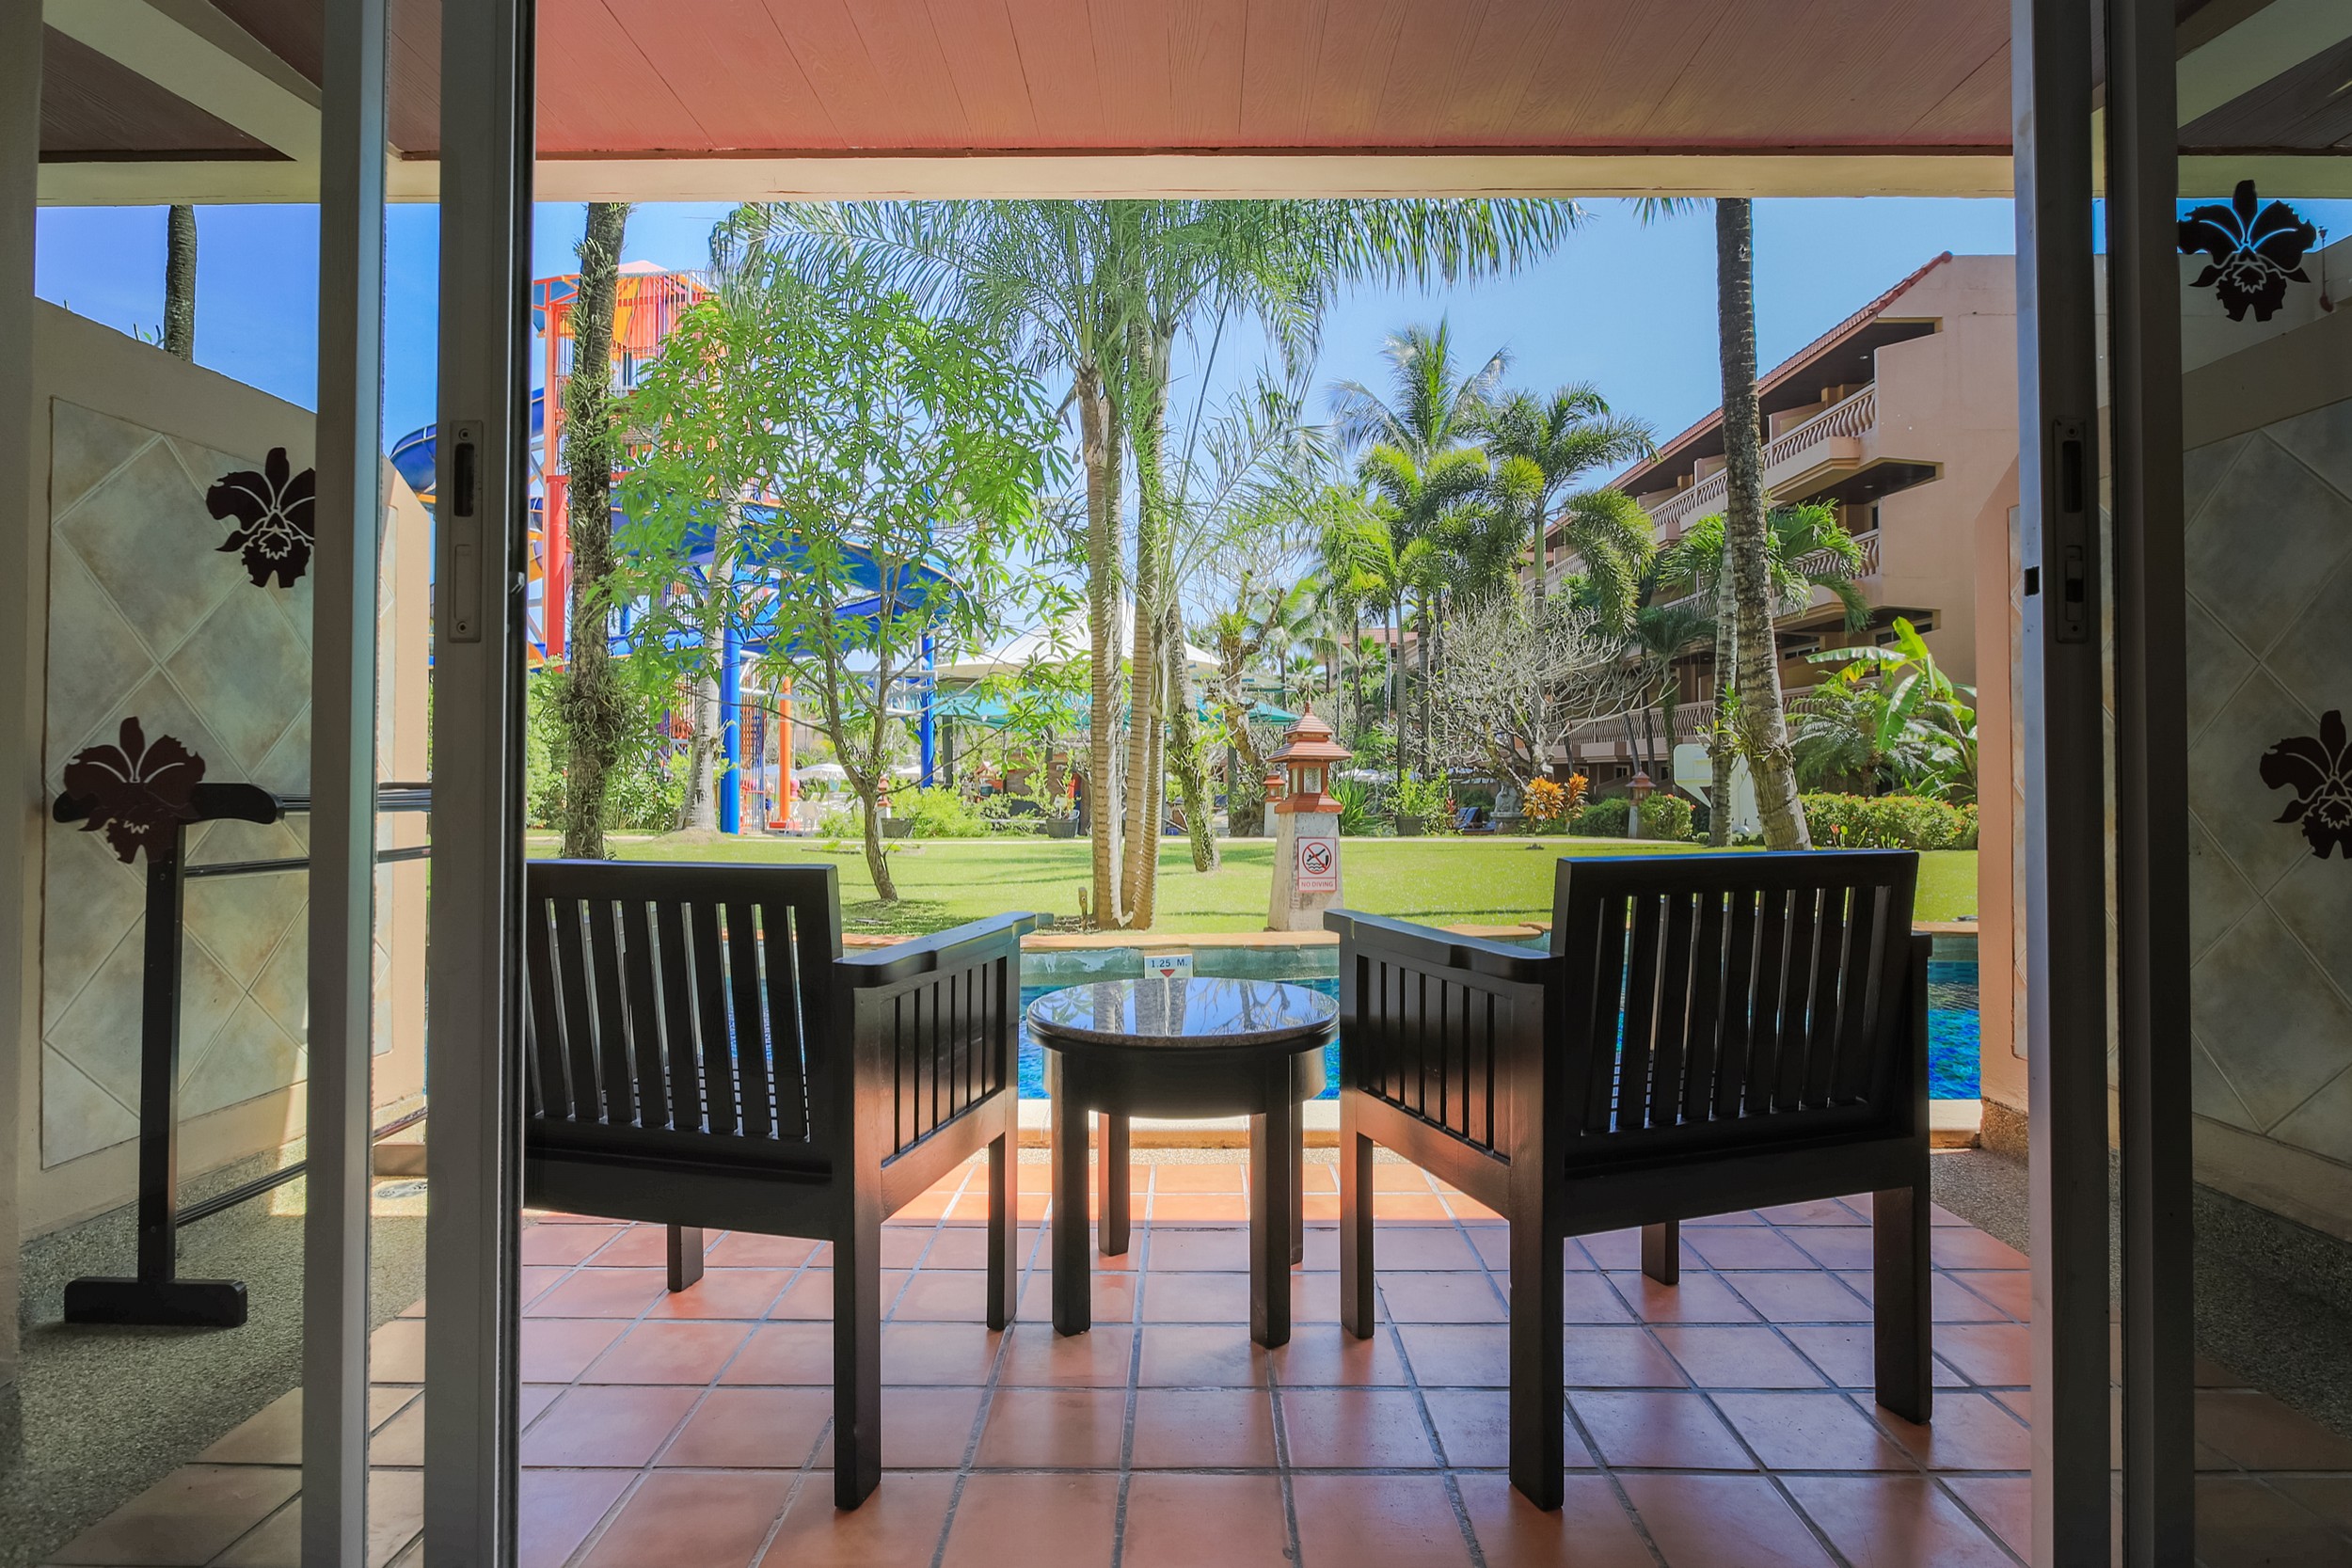 Pool Access Room at Phuket Orchid Resort & Spa